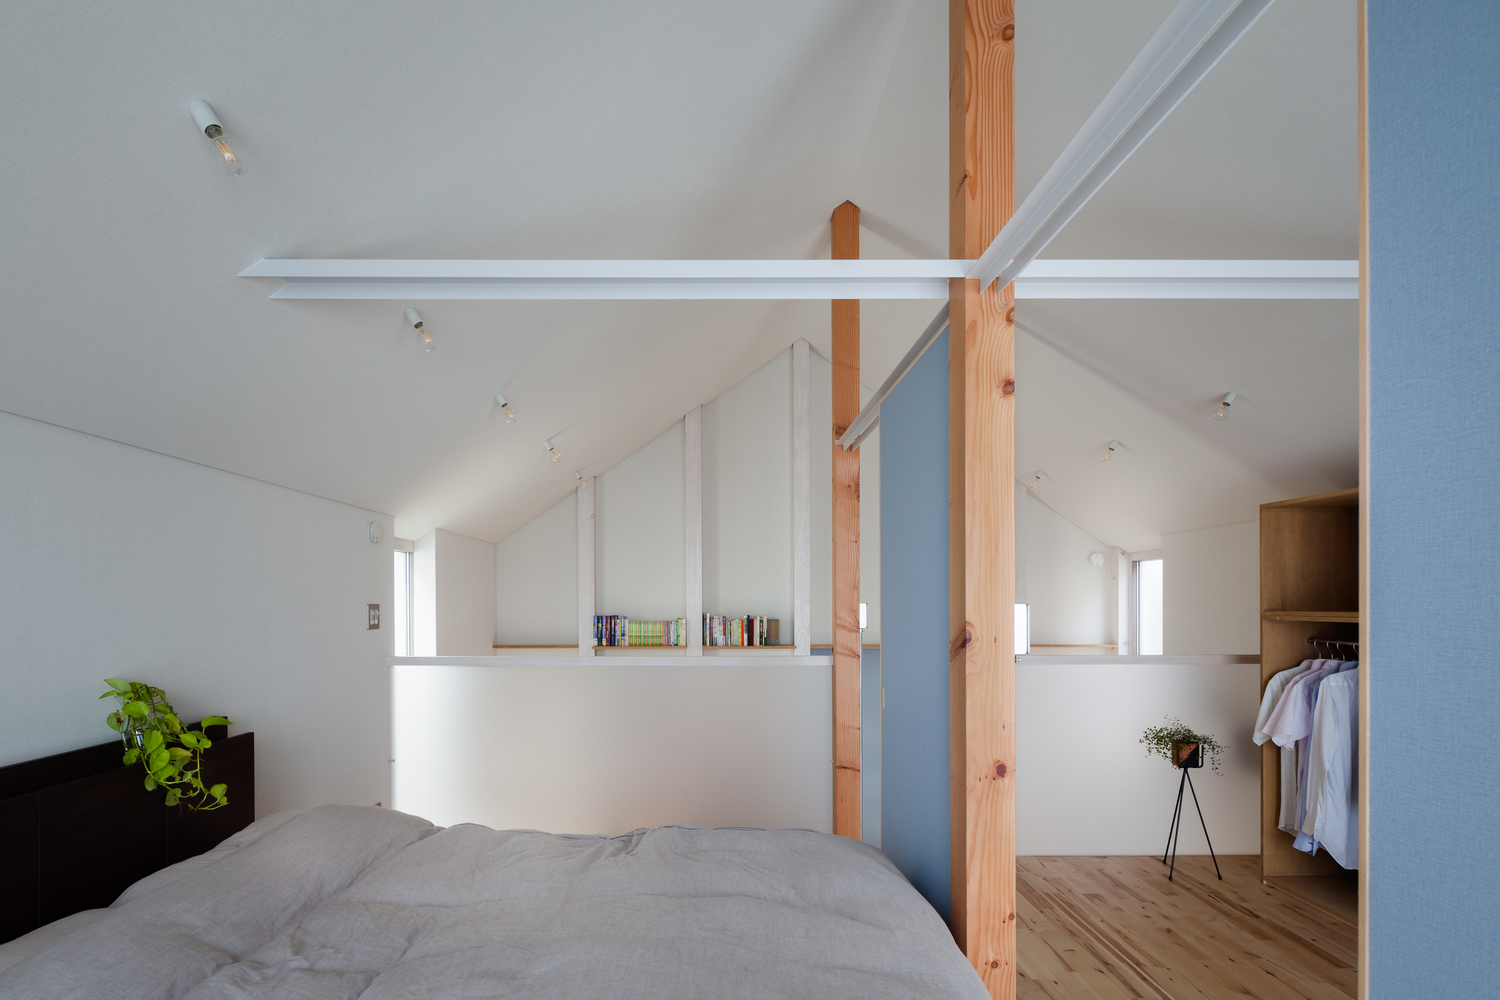 Phòng ngủ thiết kế tối giản theo phong cách của người Nhật Bản, trần nhà sơn màu trắng cho cảm giác cao thoáng. Phòng thay đồ và phòng ngủ phân vùng bằng cửa trượt màu xanh lam nhạt.